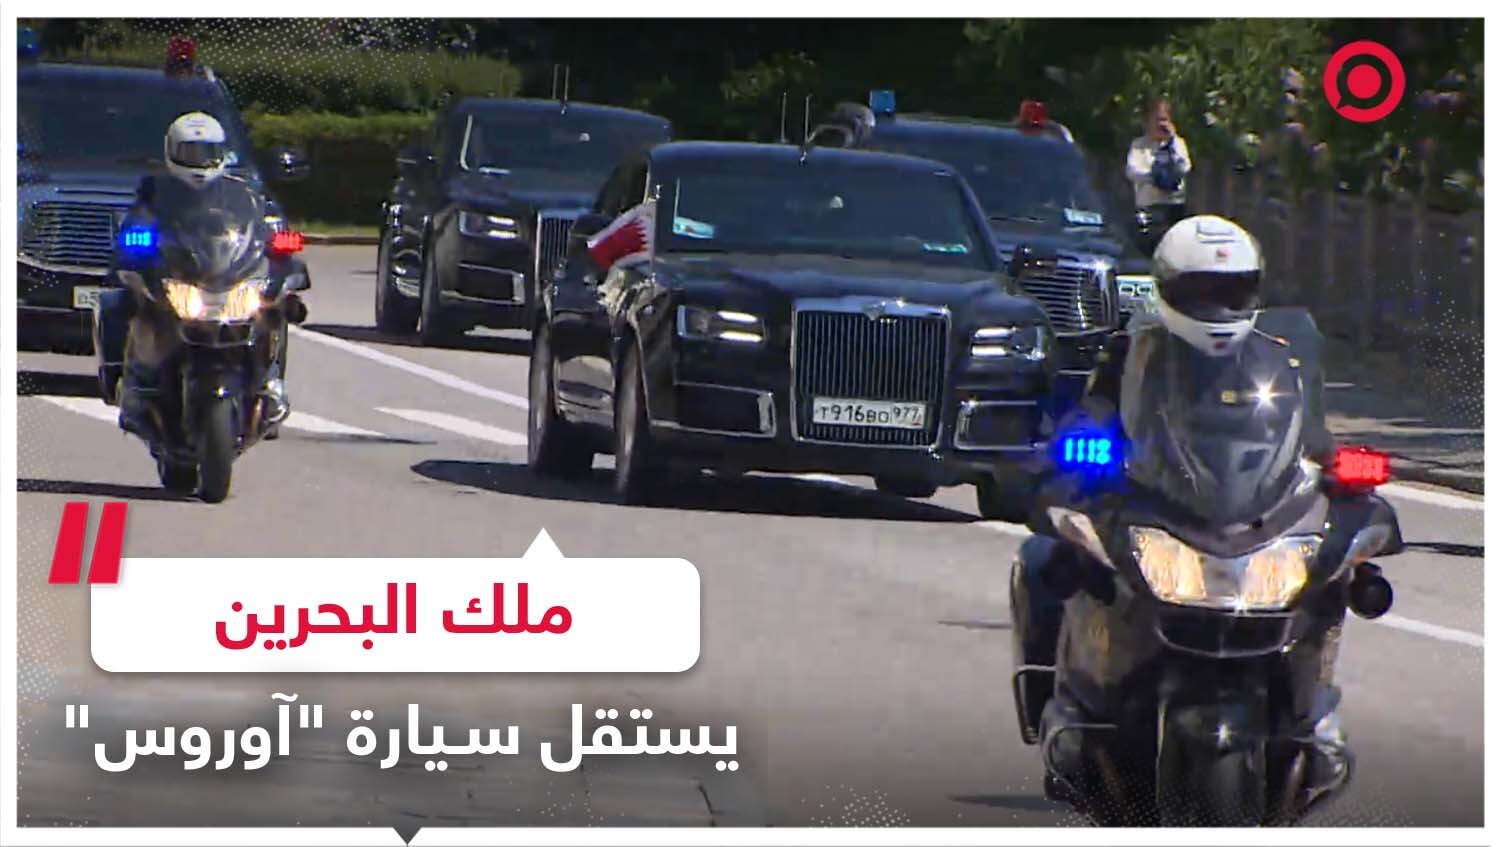 ملك البحرين يستقل سيارة "آوروس" الروسية الفاخرة